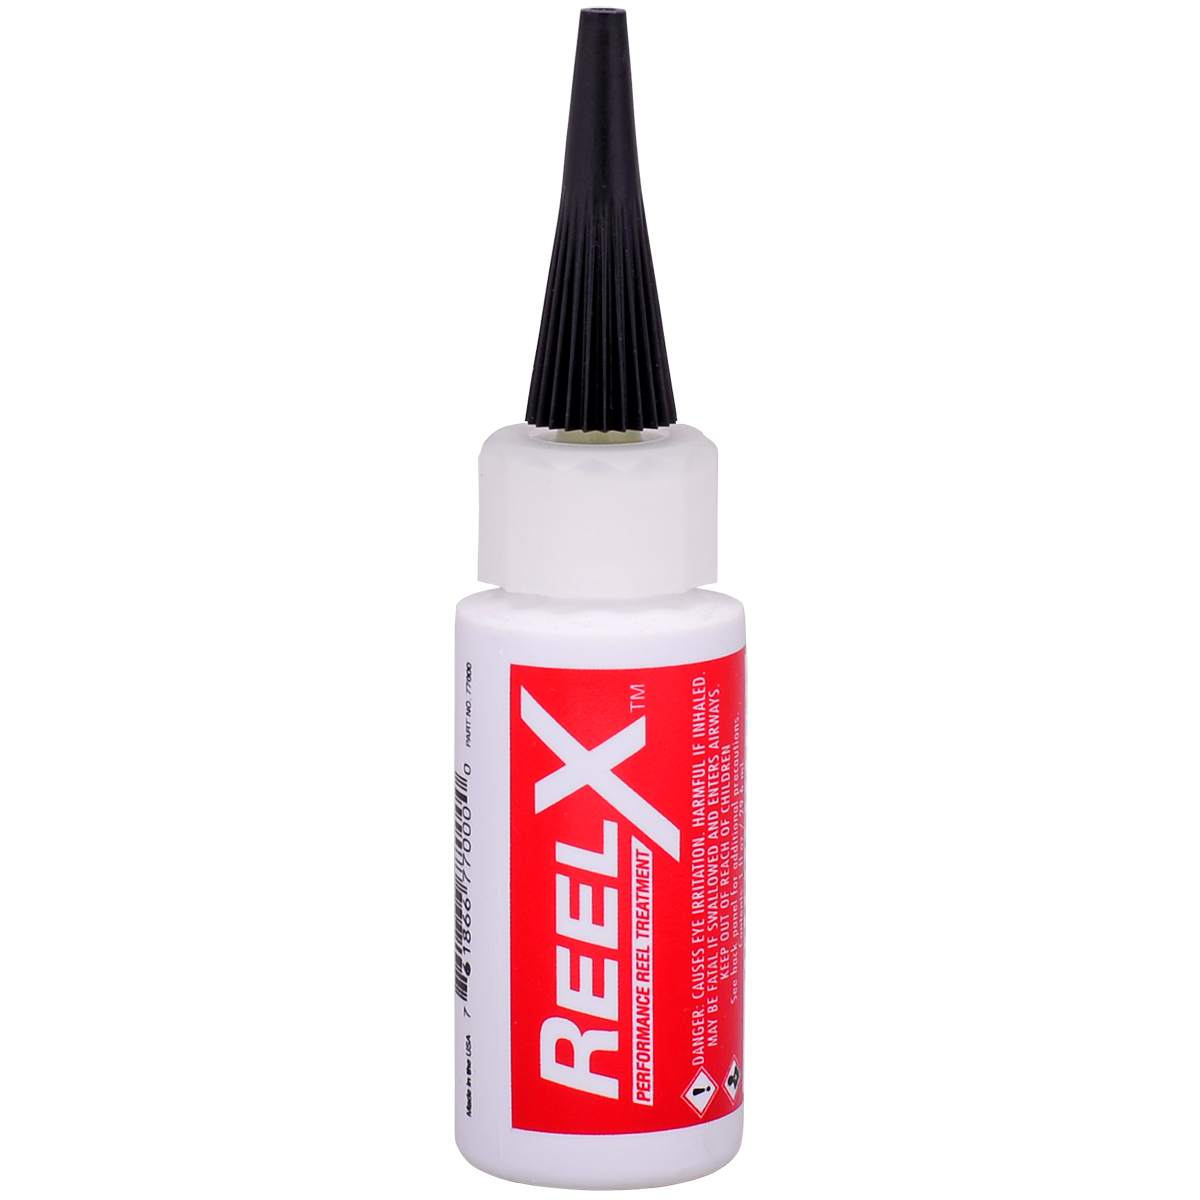 ReelX ultimate fishing reel lubricant